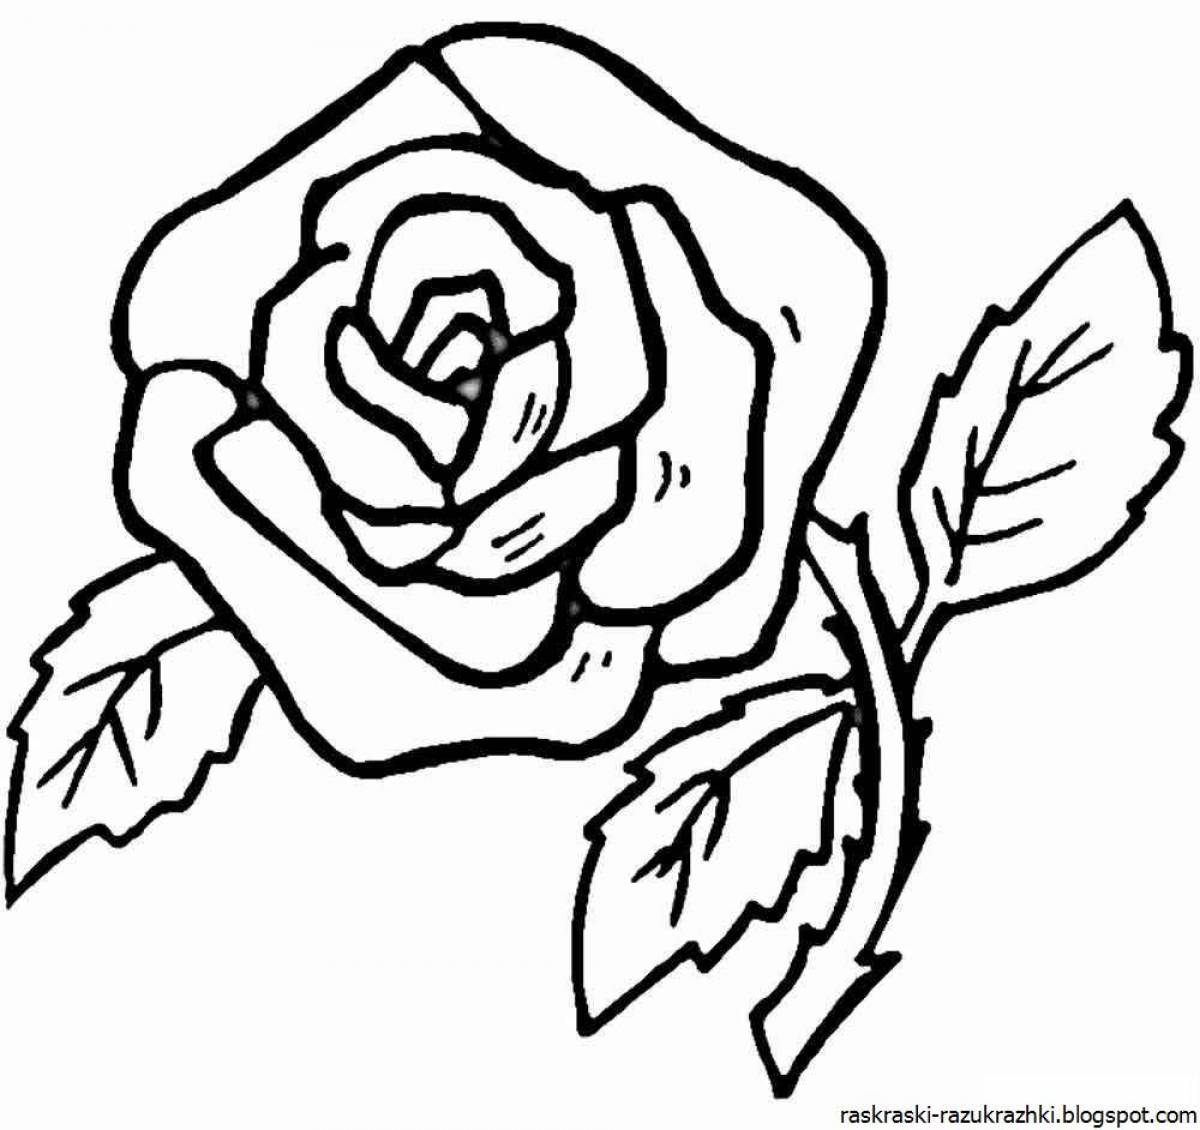 Beautiful rose coloring book for kids